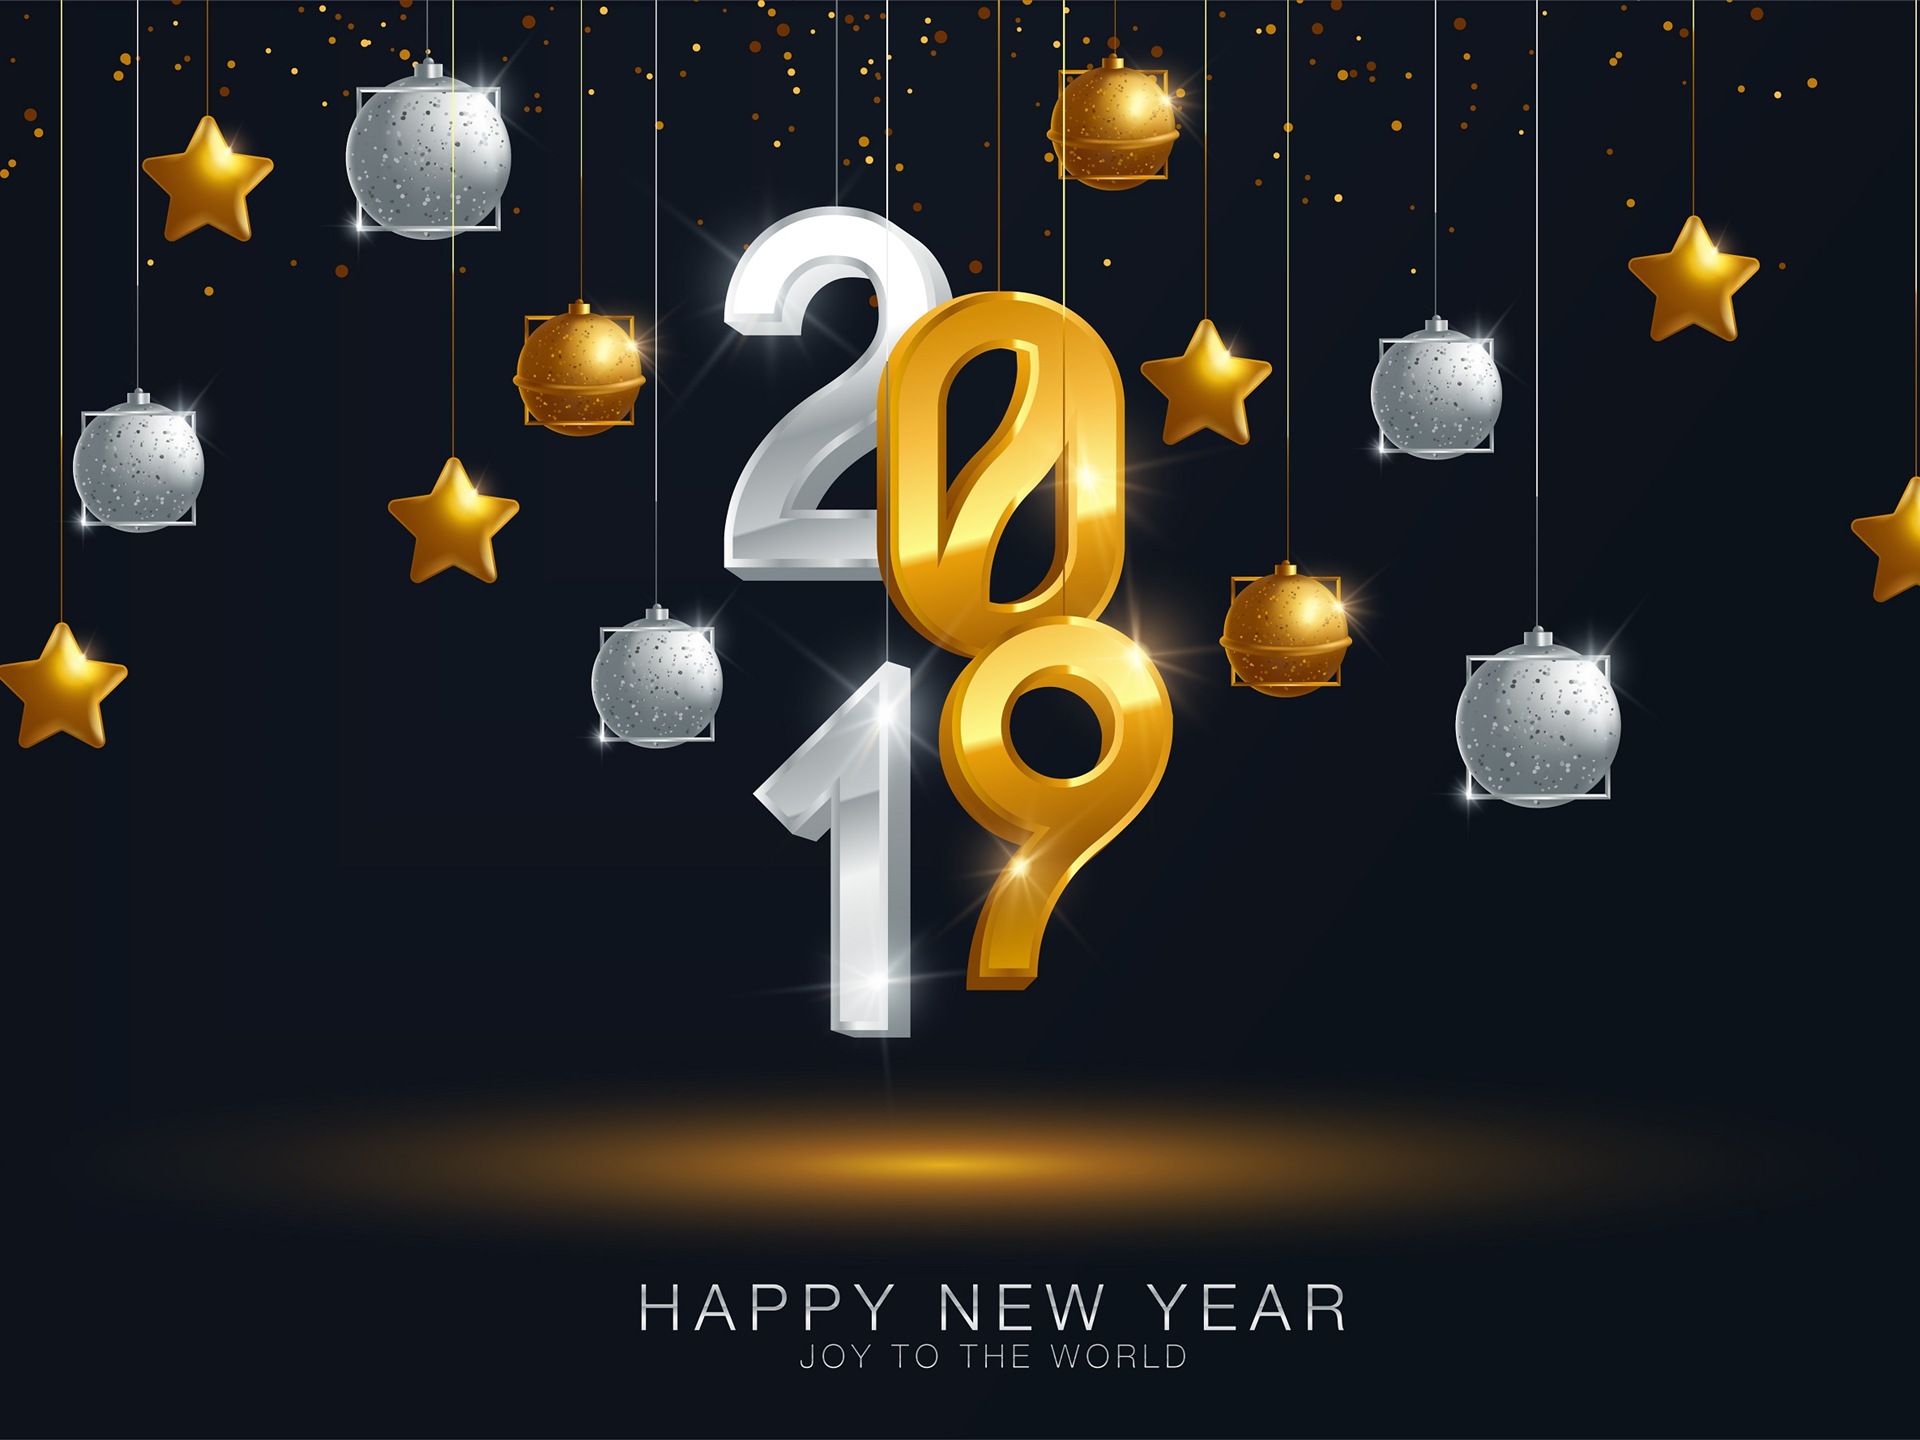 Feliz año nuevo 2019 HD wallpapers #12 - 1920x1440